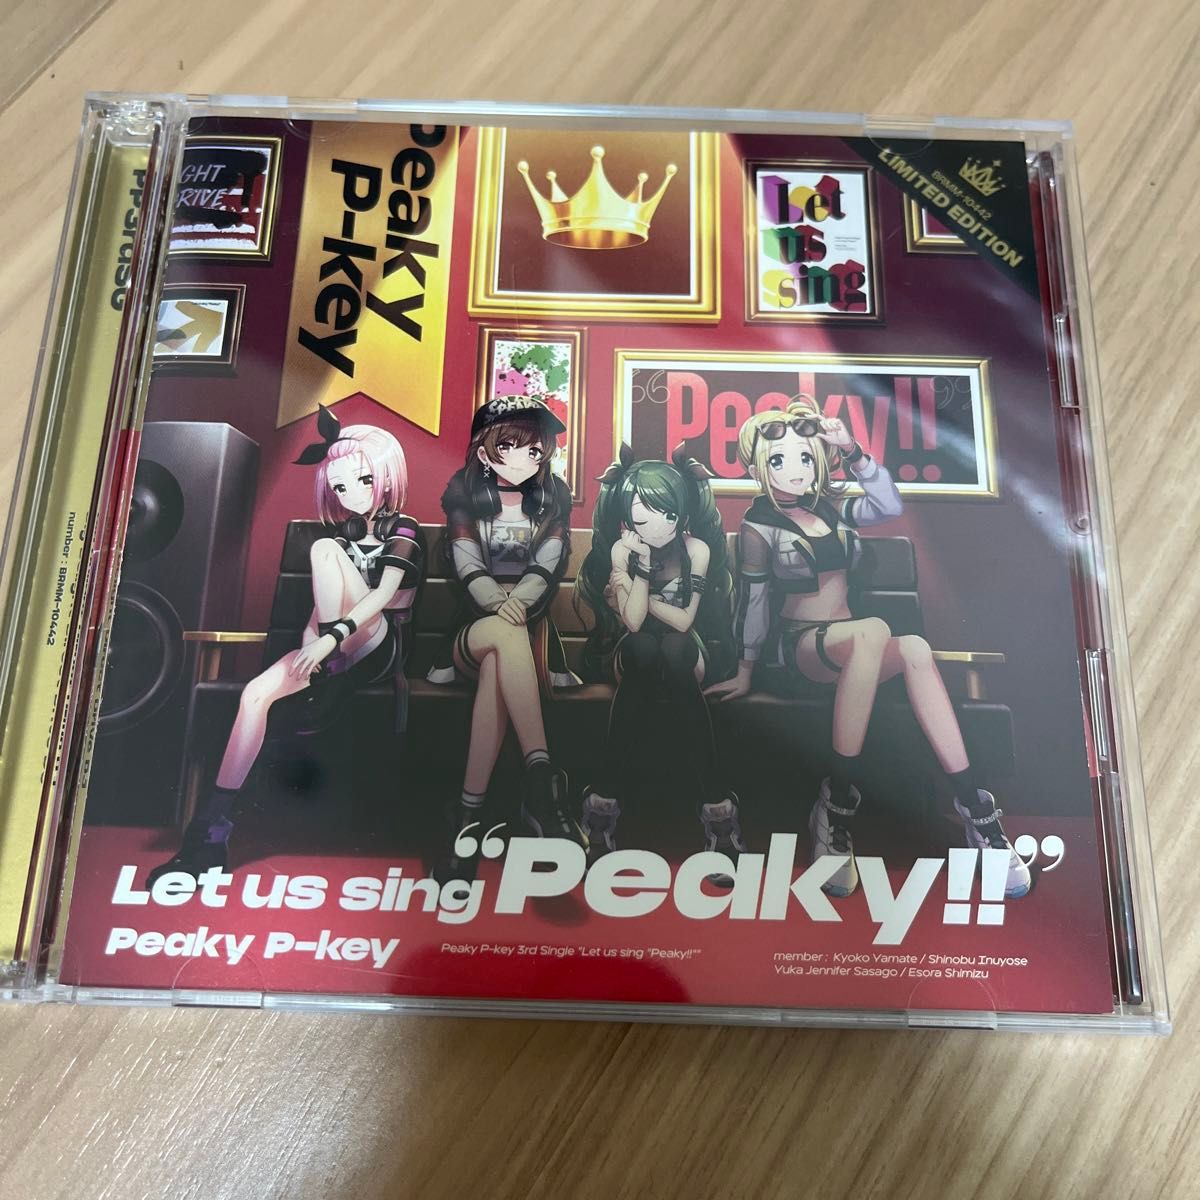 Let us sing “Peaky!! Blu-ray付生産限定盤 CD+Blu-ray Peaky P-key